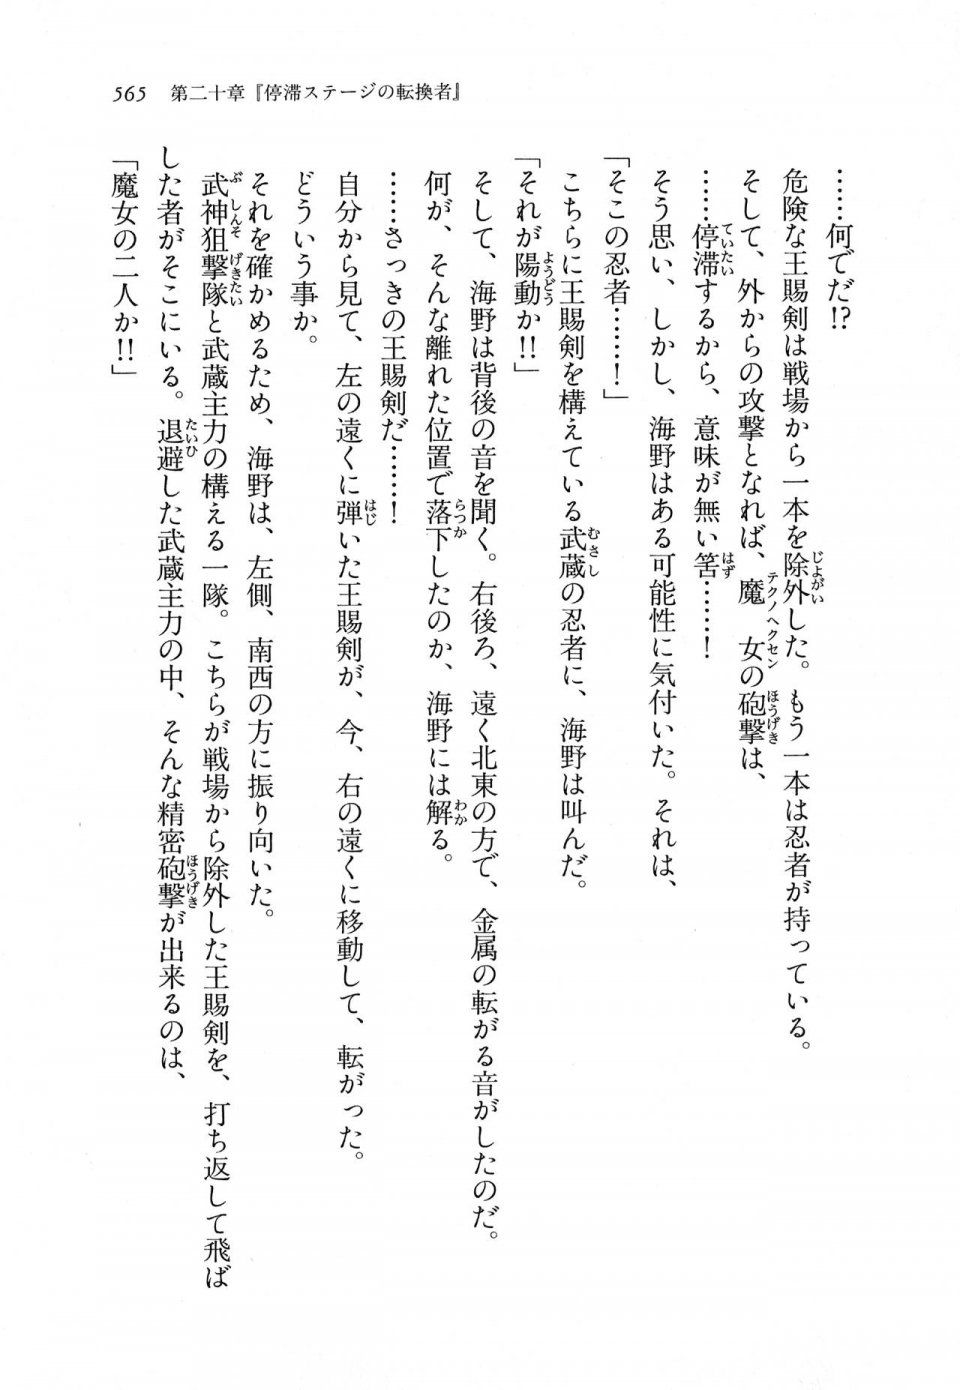 Kyoukai Senjou no Horizon LN Vol 11(5A) - Photo #565